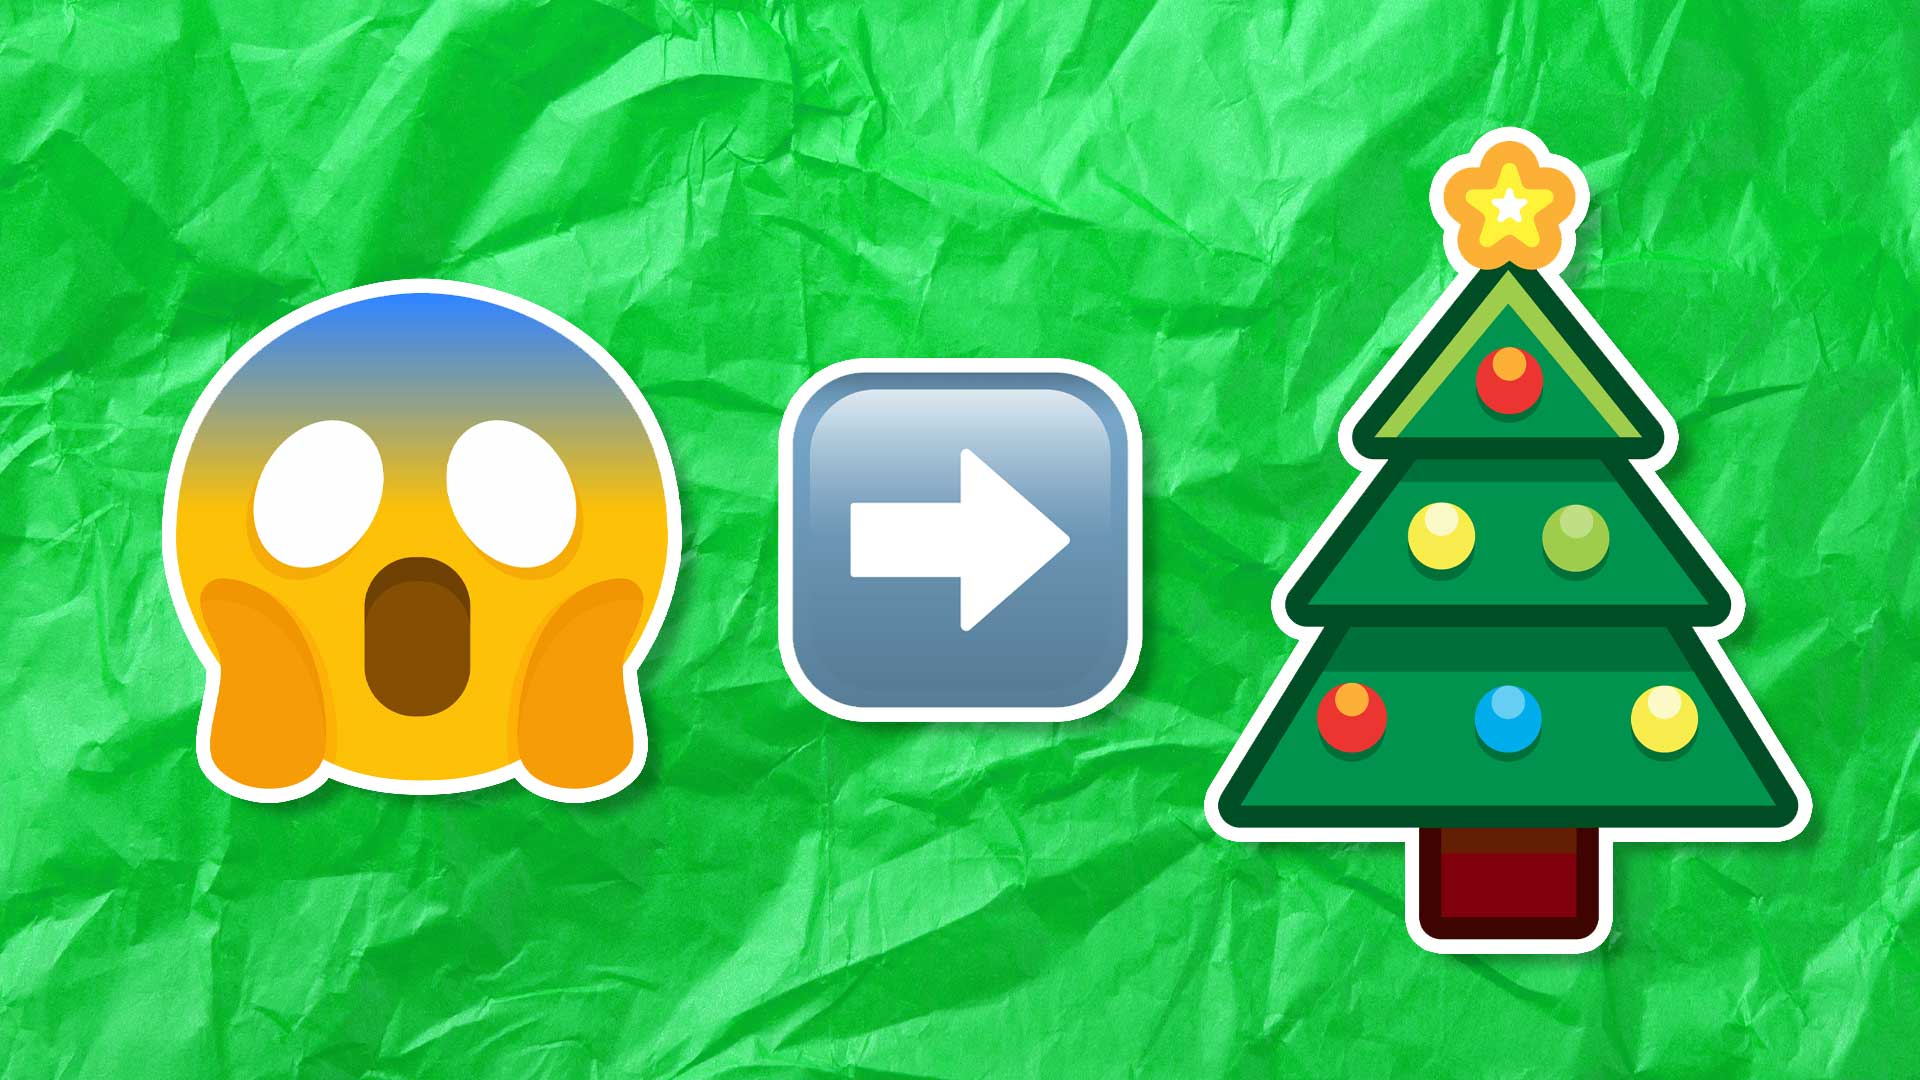 A scared emoji, an arrow and a Christmas tree